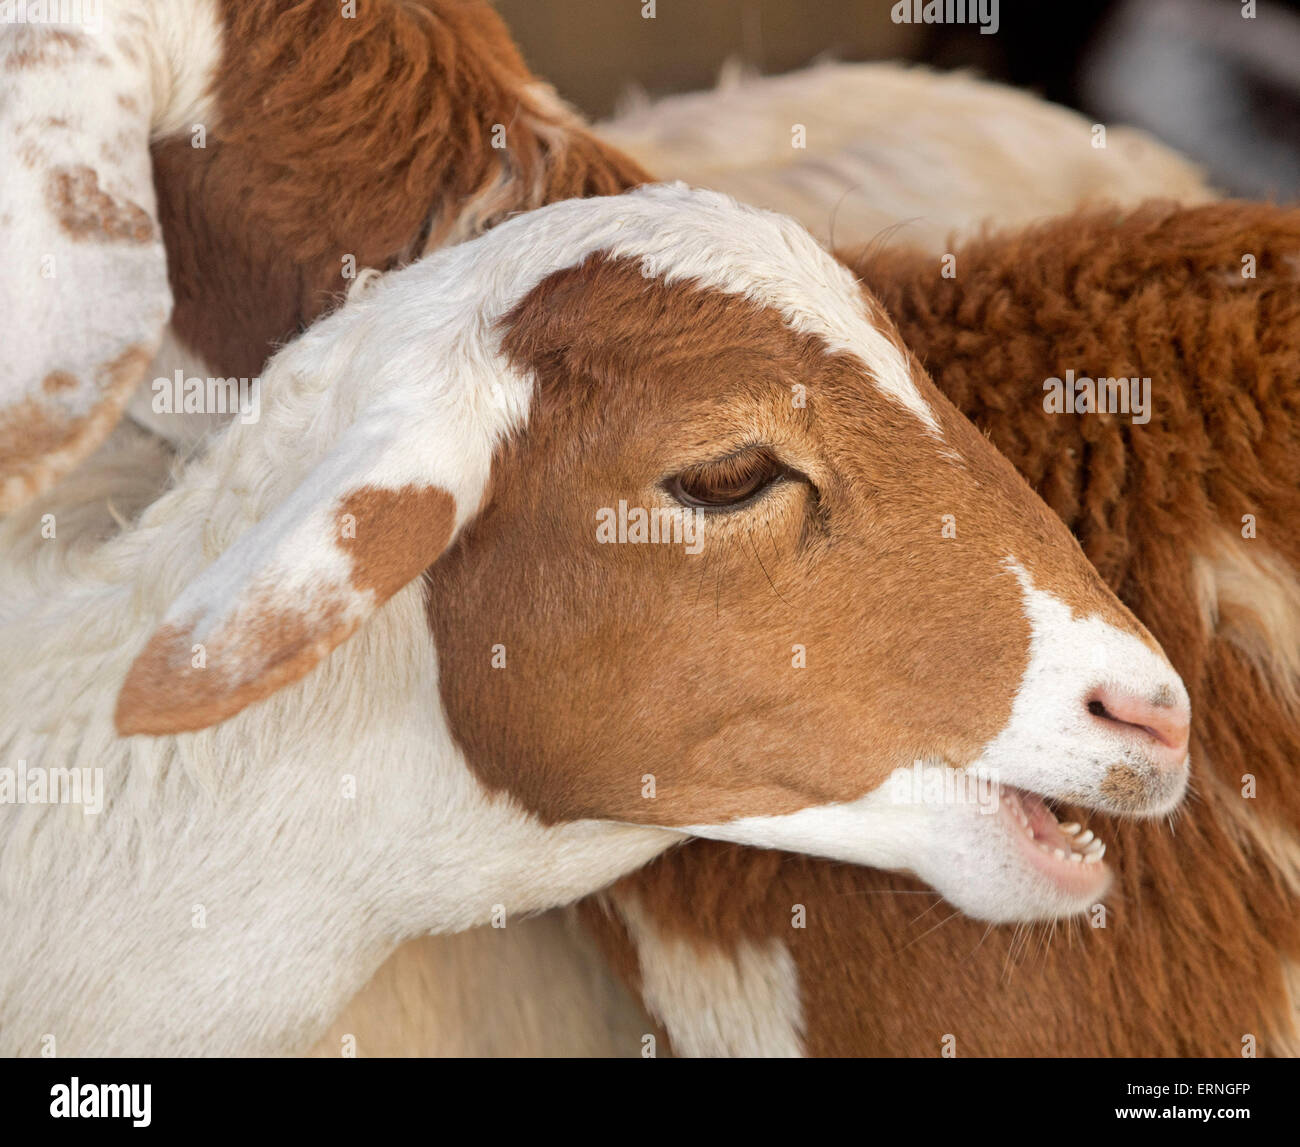 Goat Face Stock Photos & Goat Face Stock Images - Alamy1300 x 1148